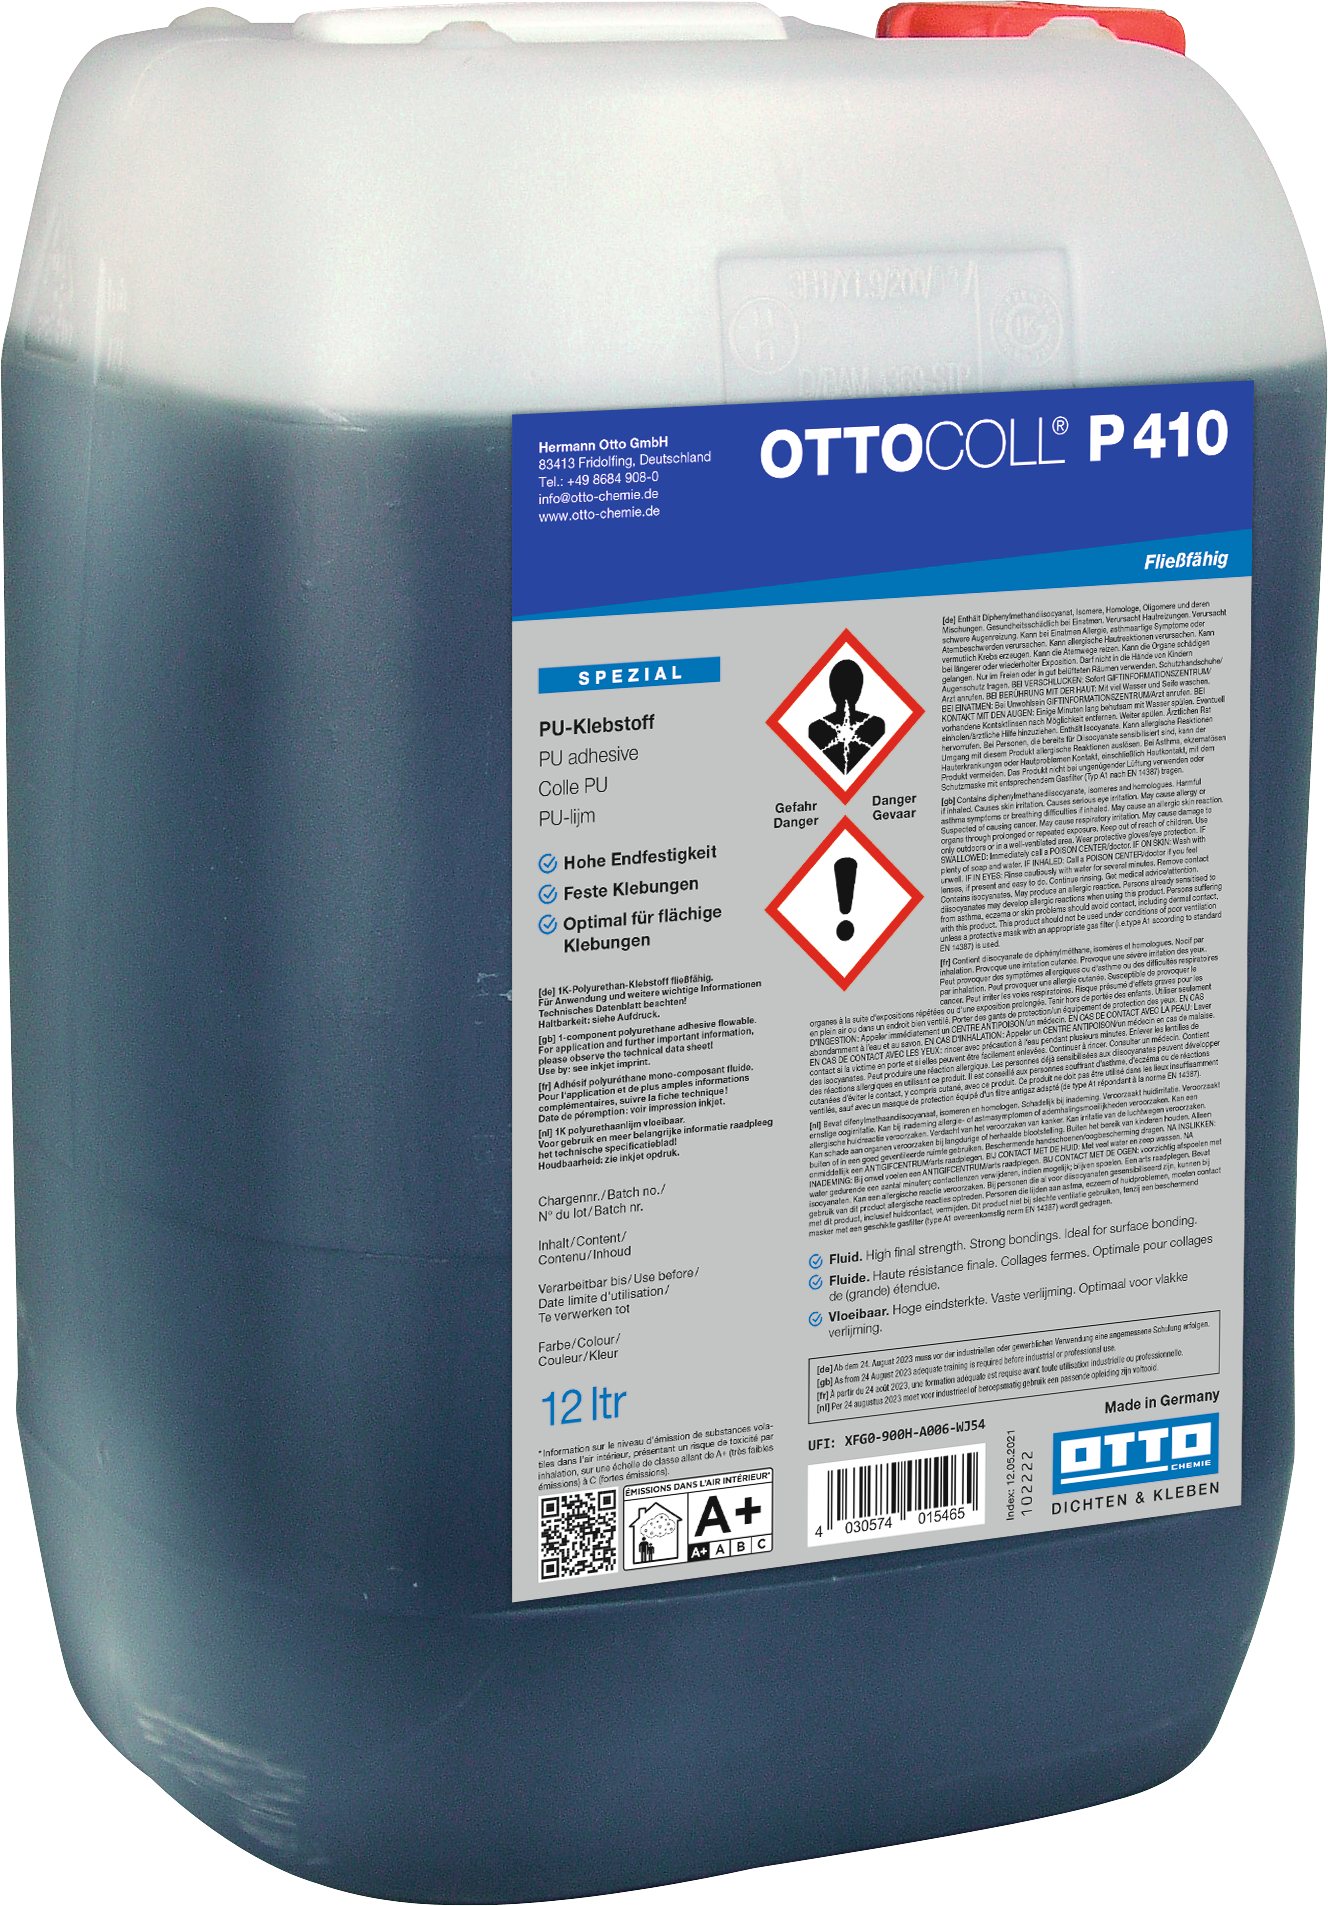 OTTOCOLL P410 - Der fließfähige PU-Klebstoff 12L